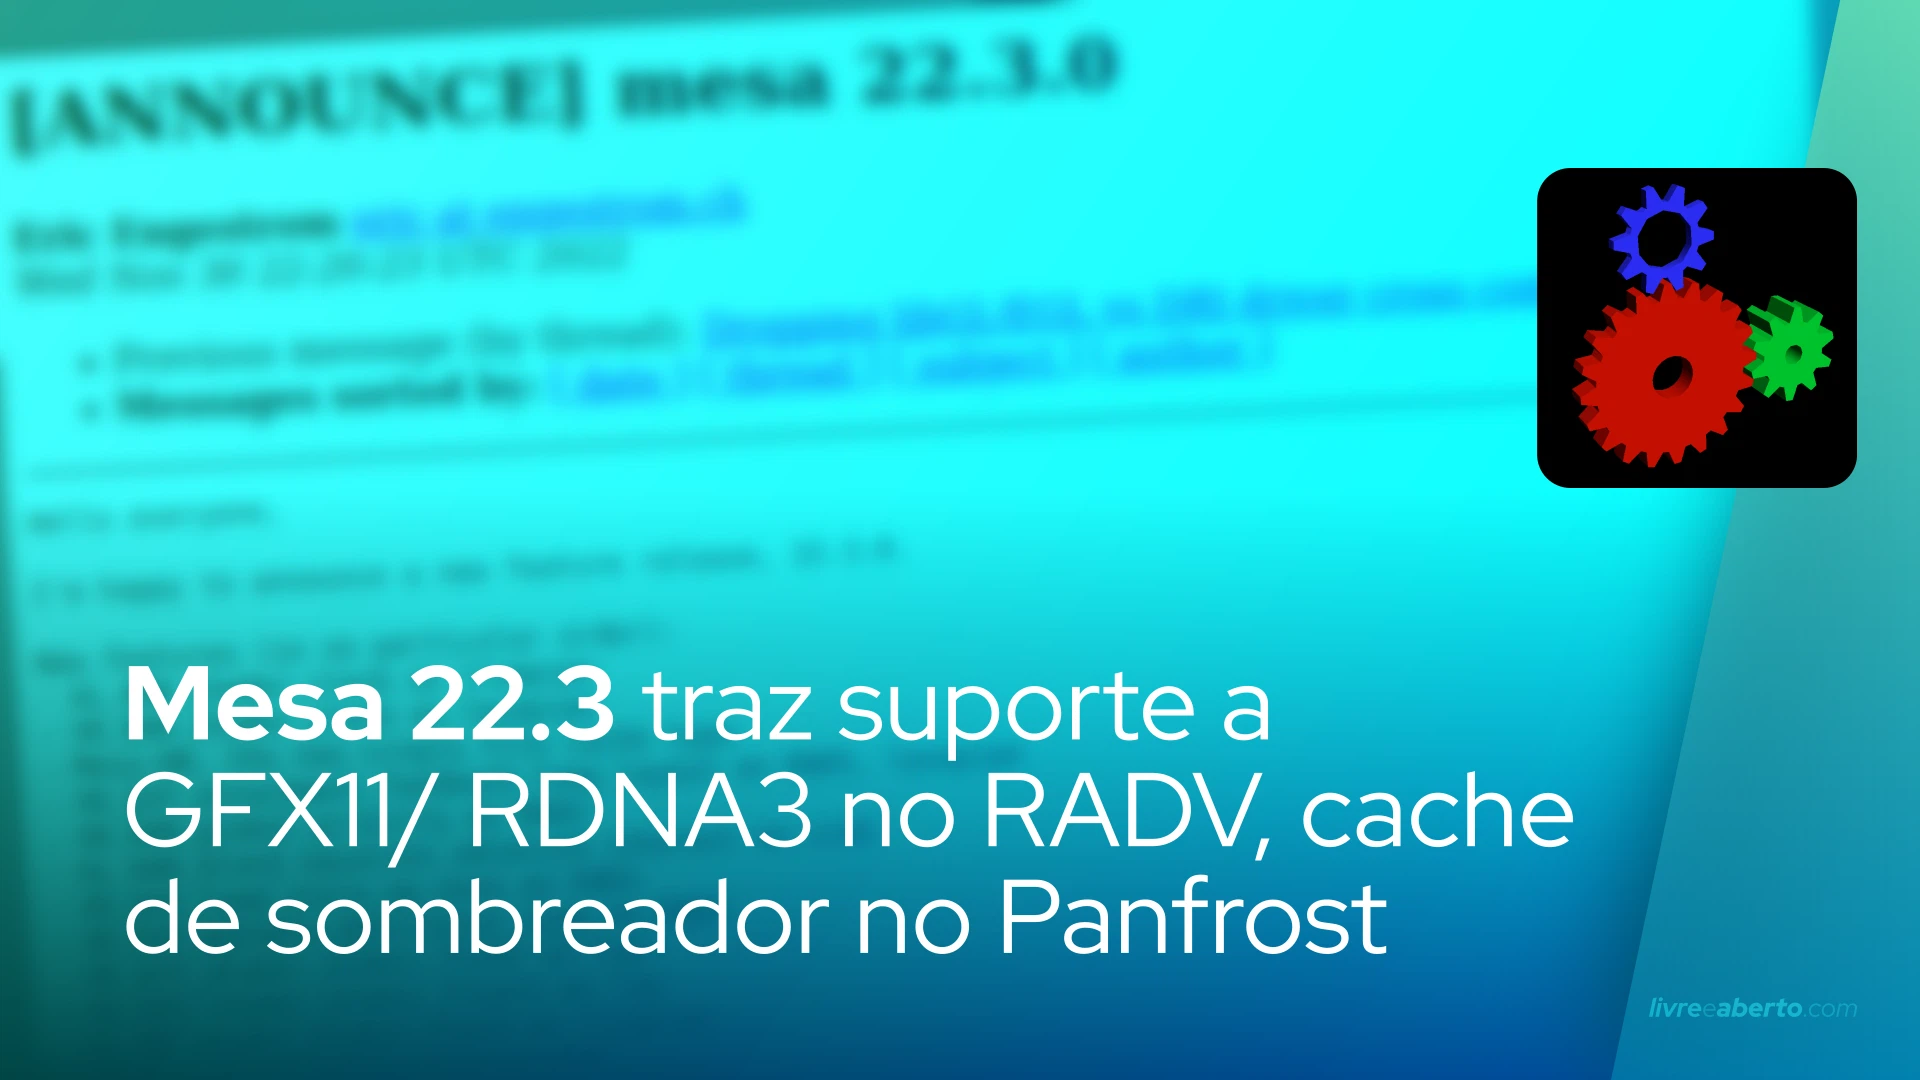 Mesa 22.3 traz suporte inicial a GFX11/RDNA3 no RADV, cache de disco de sombreador no Panfrost